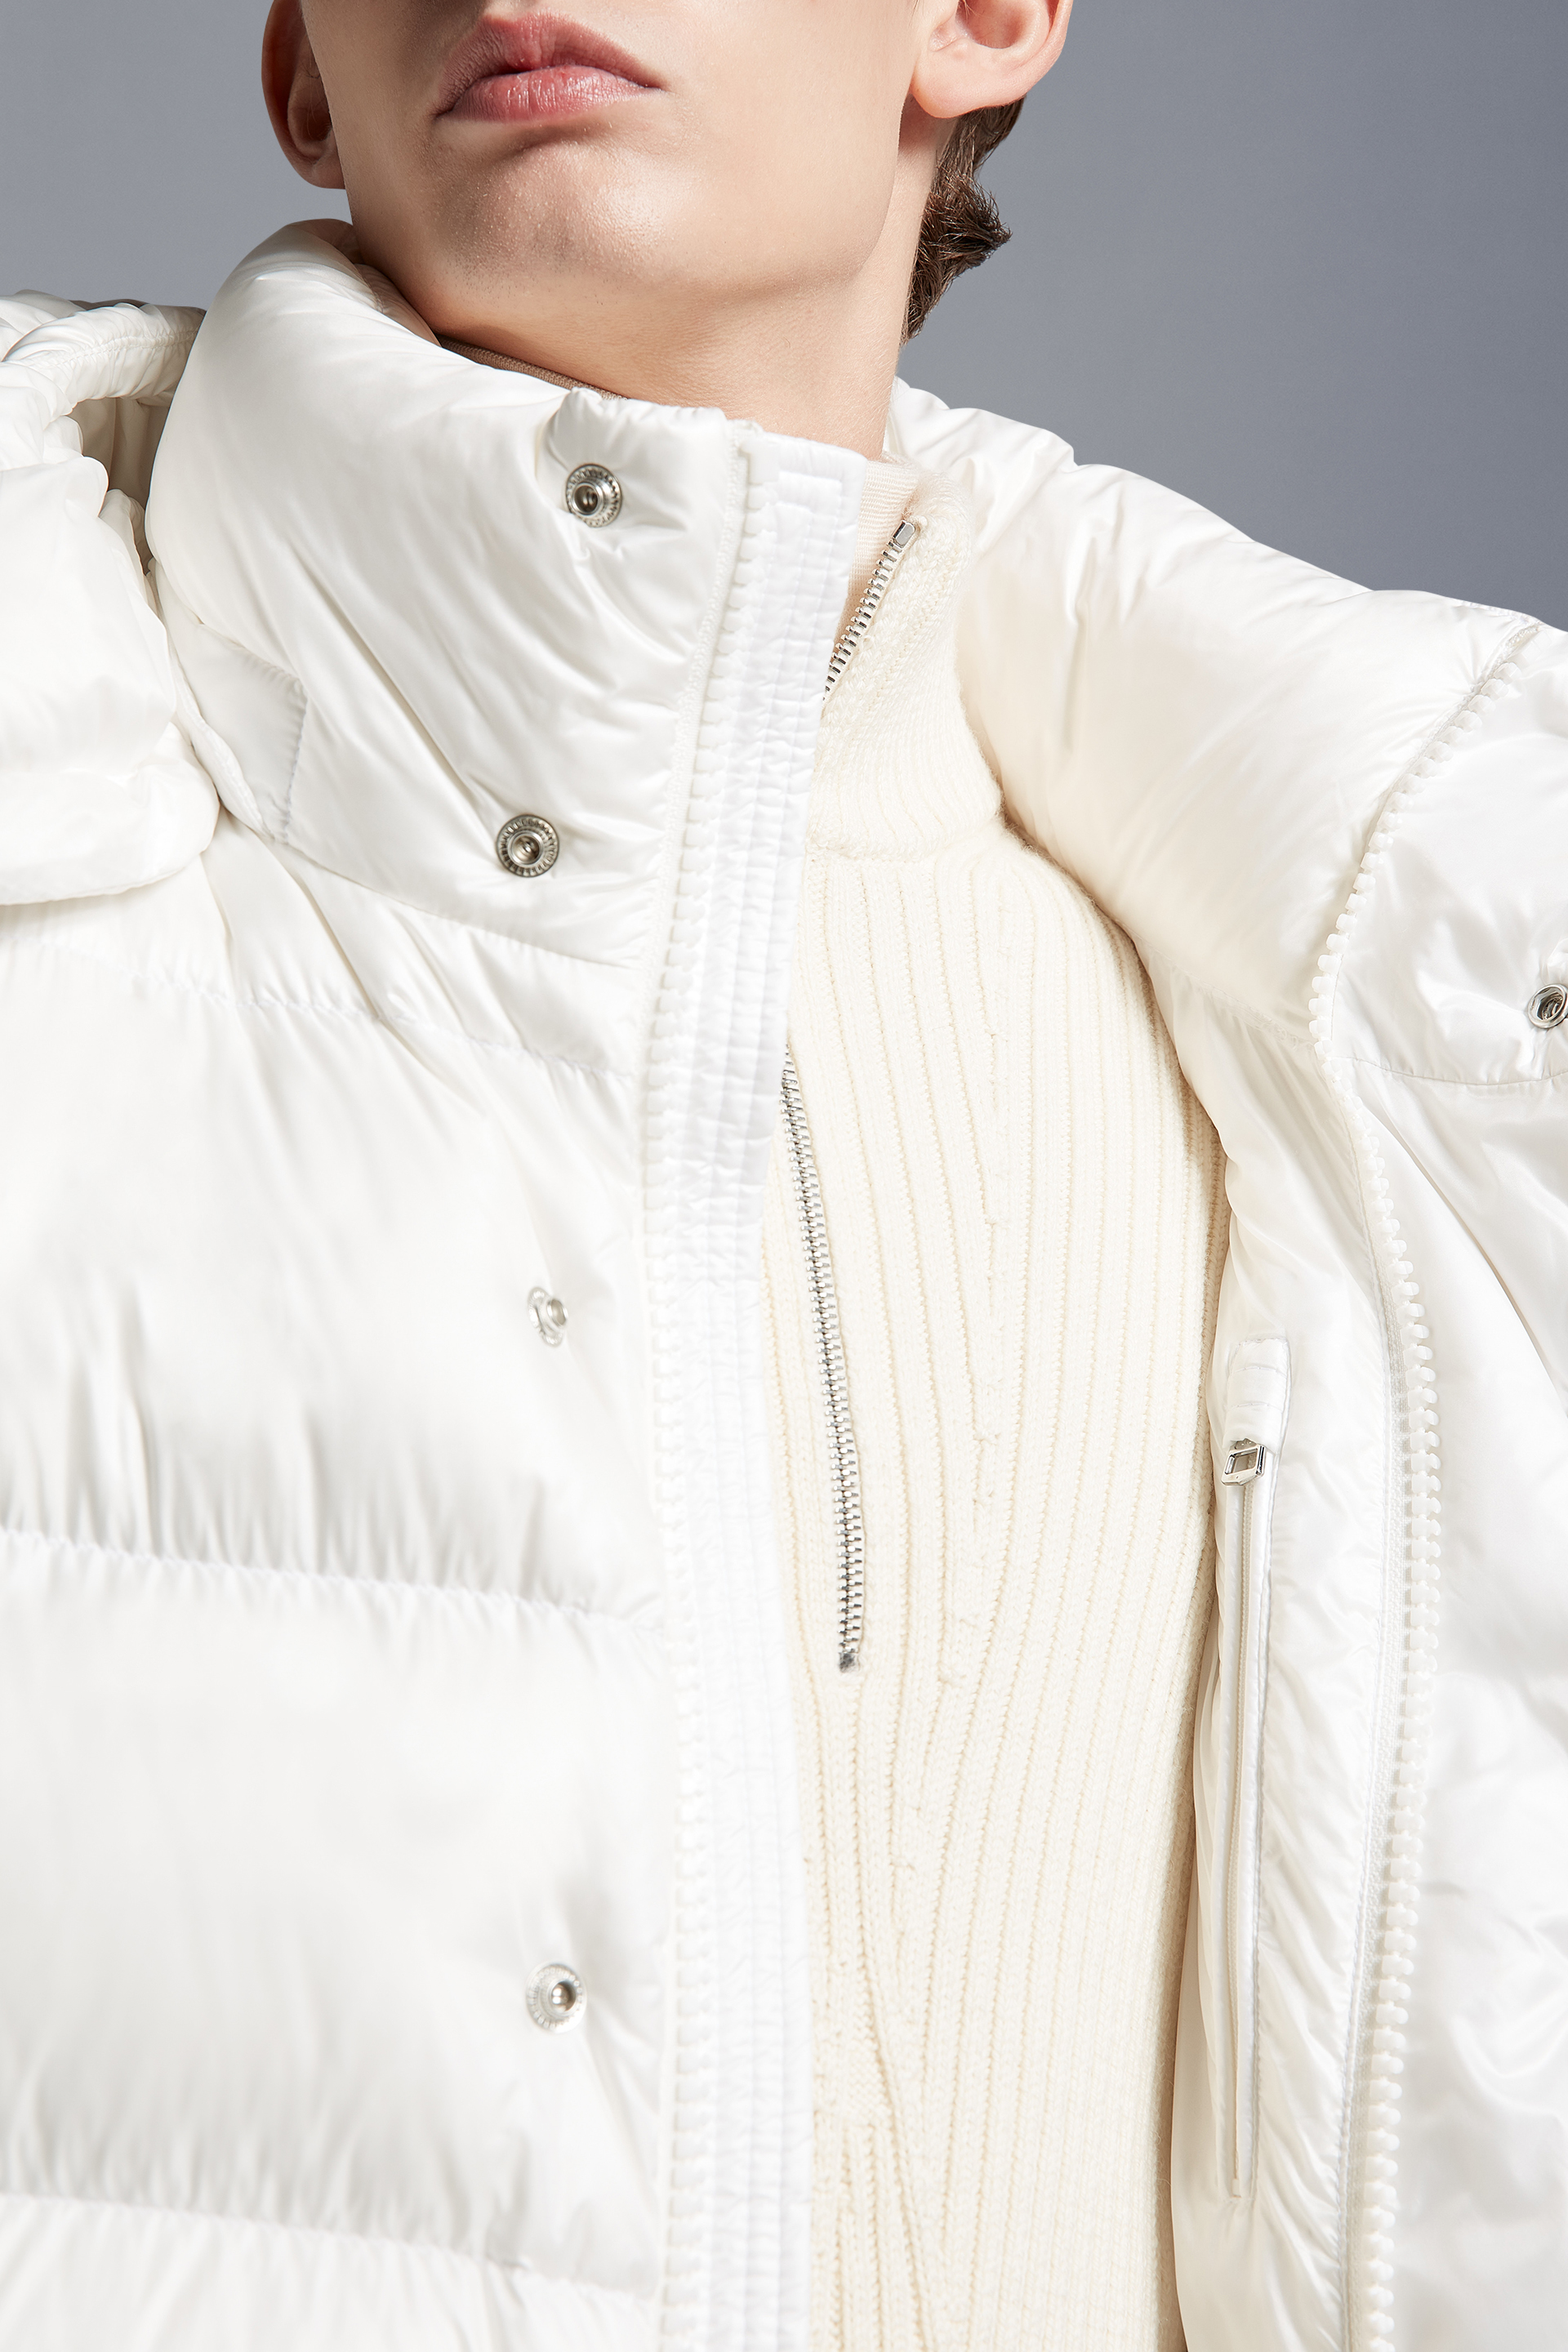 Moncler Maya 70冬季短款男士羽绒服夹克外套白色– 短款羽绒服– 男装 